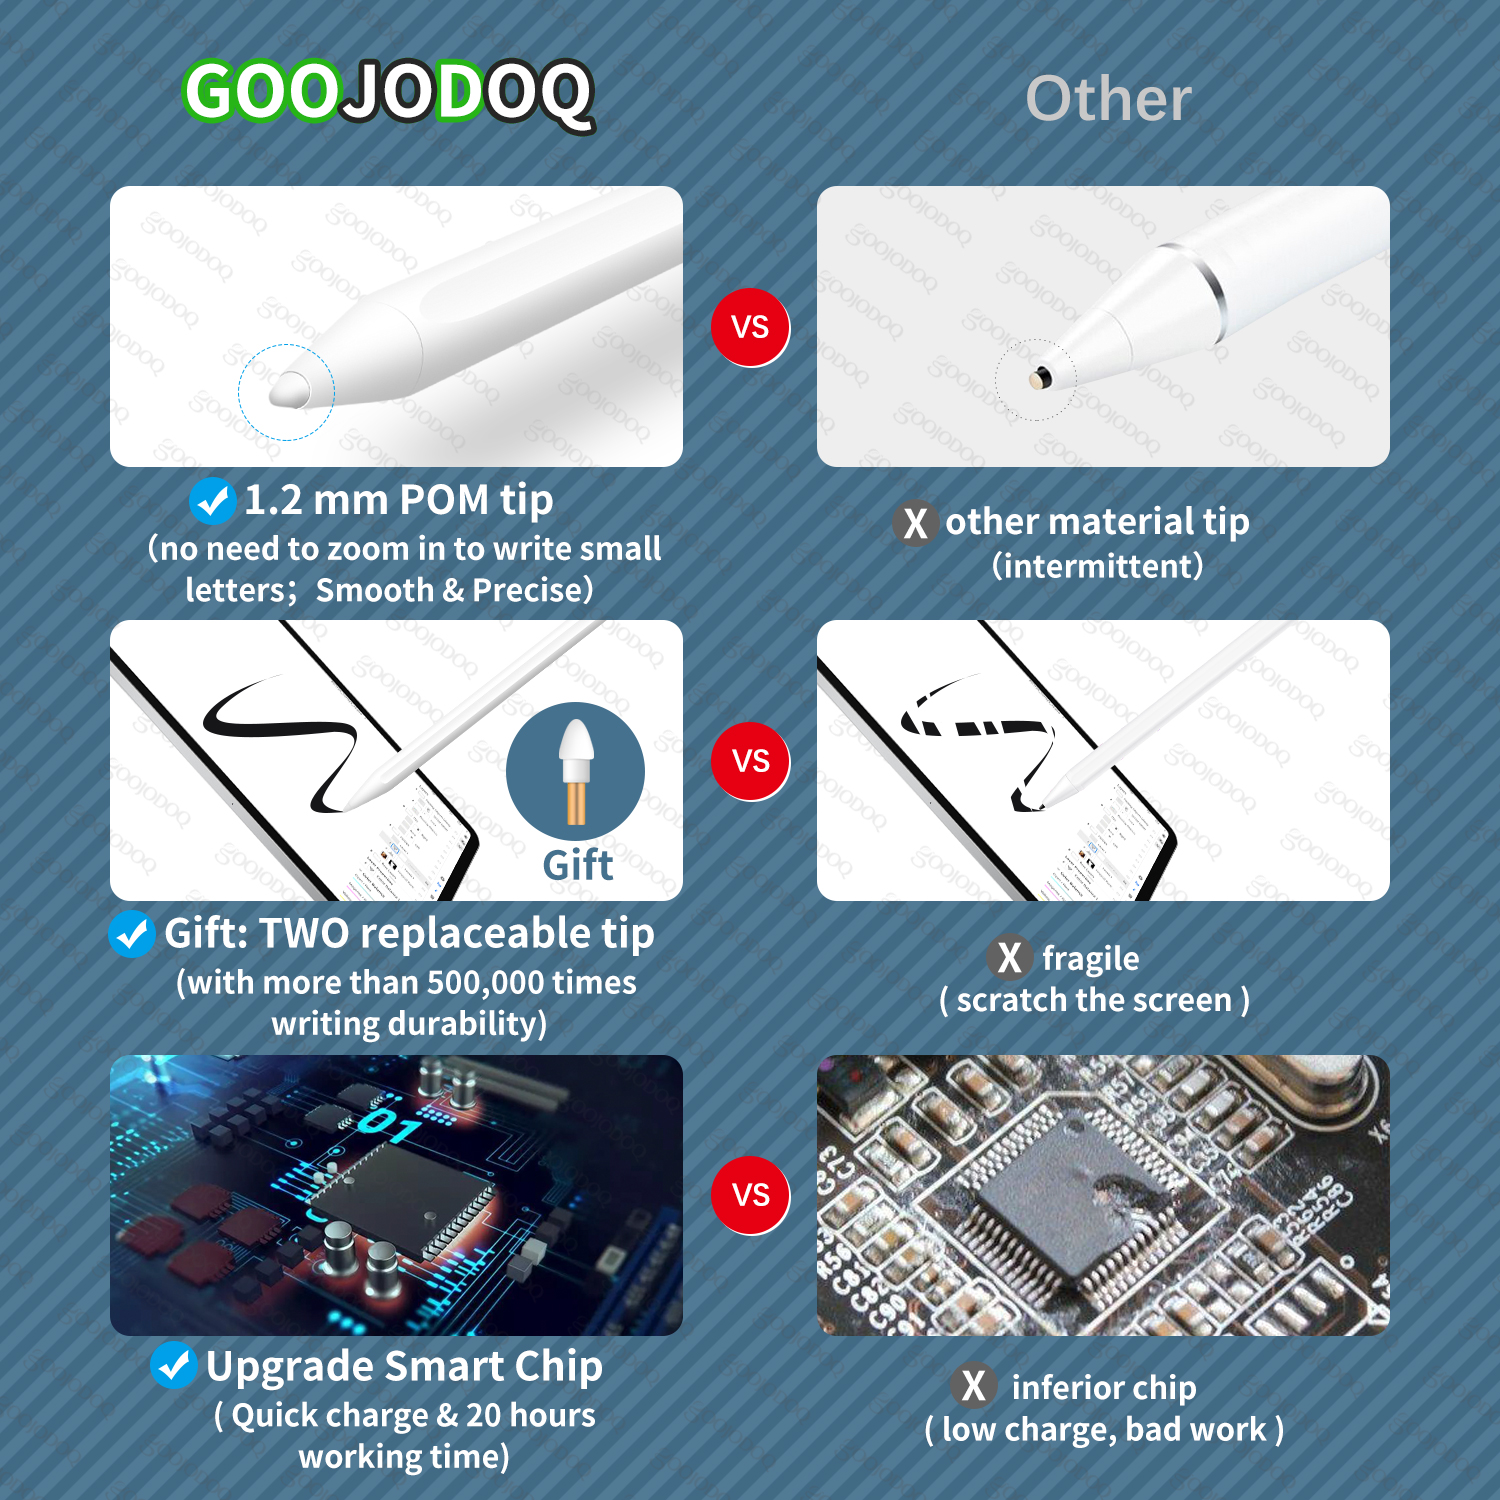 Ngòi Goojodoq cho bút cảm ứng Ipad với công nghệ từ chối cảm ứng tay